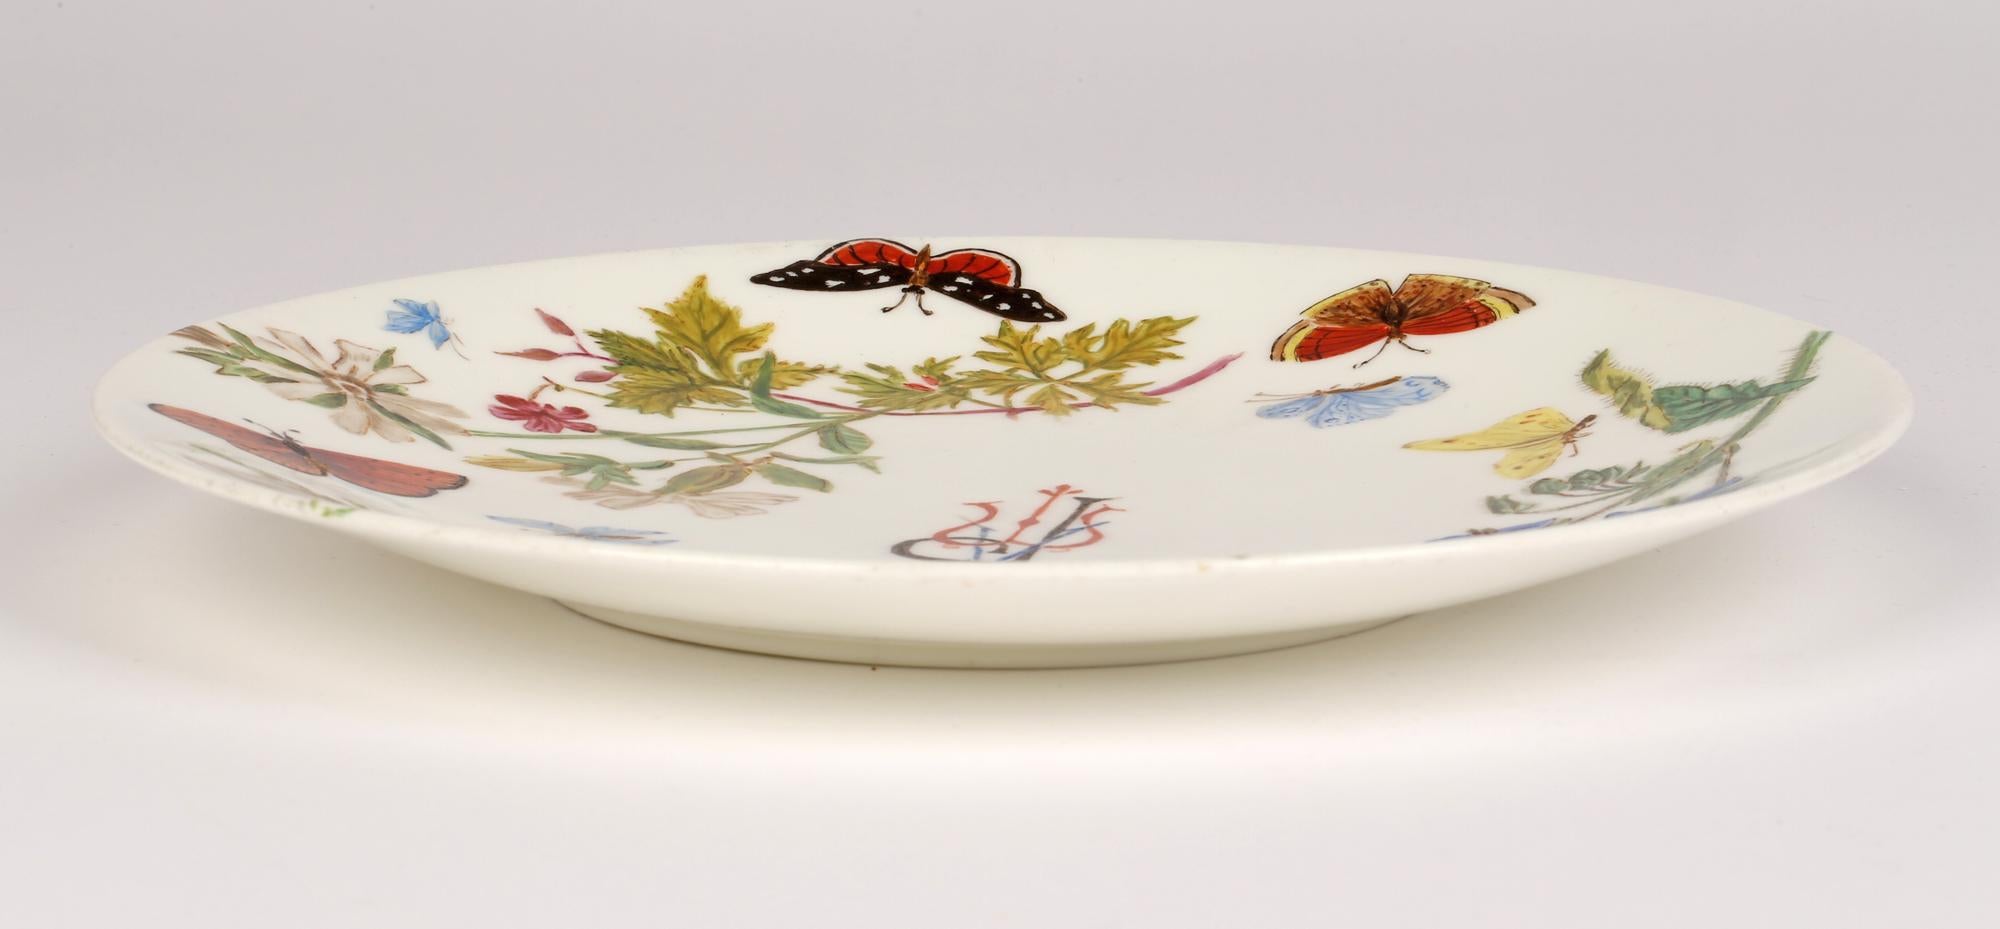 Eine ungewöhnliche und stilvolle Aesthetic Movement Minton Porzellan Kabinett Teller handbemalt mit Blumen und Schmetterlingen mit Initialen APM und aus dem Jahr 1890. Dieser fein gearbeitete Teller hat eine einfache runde Form mit einem leicht